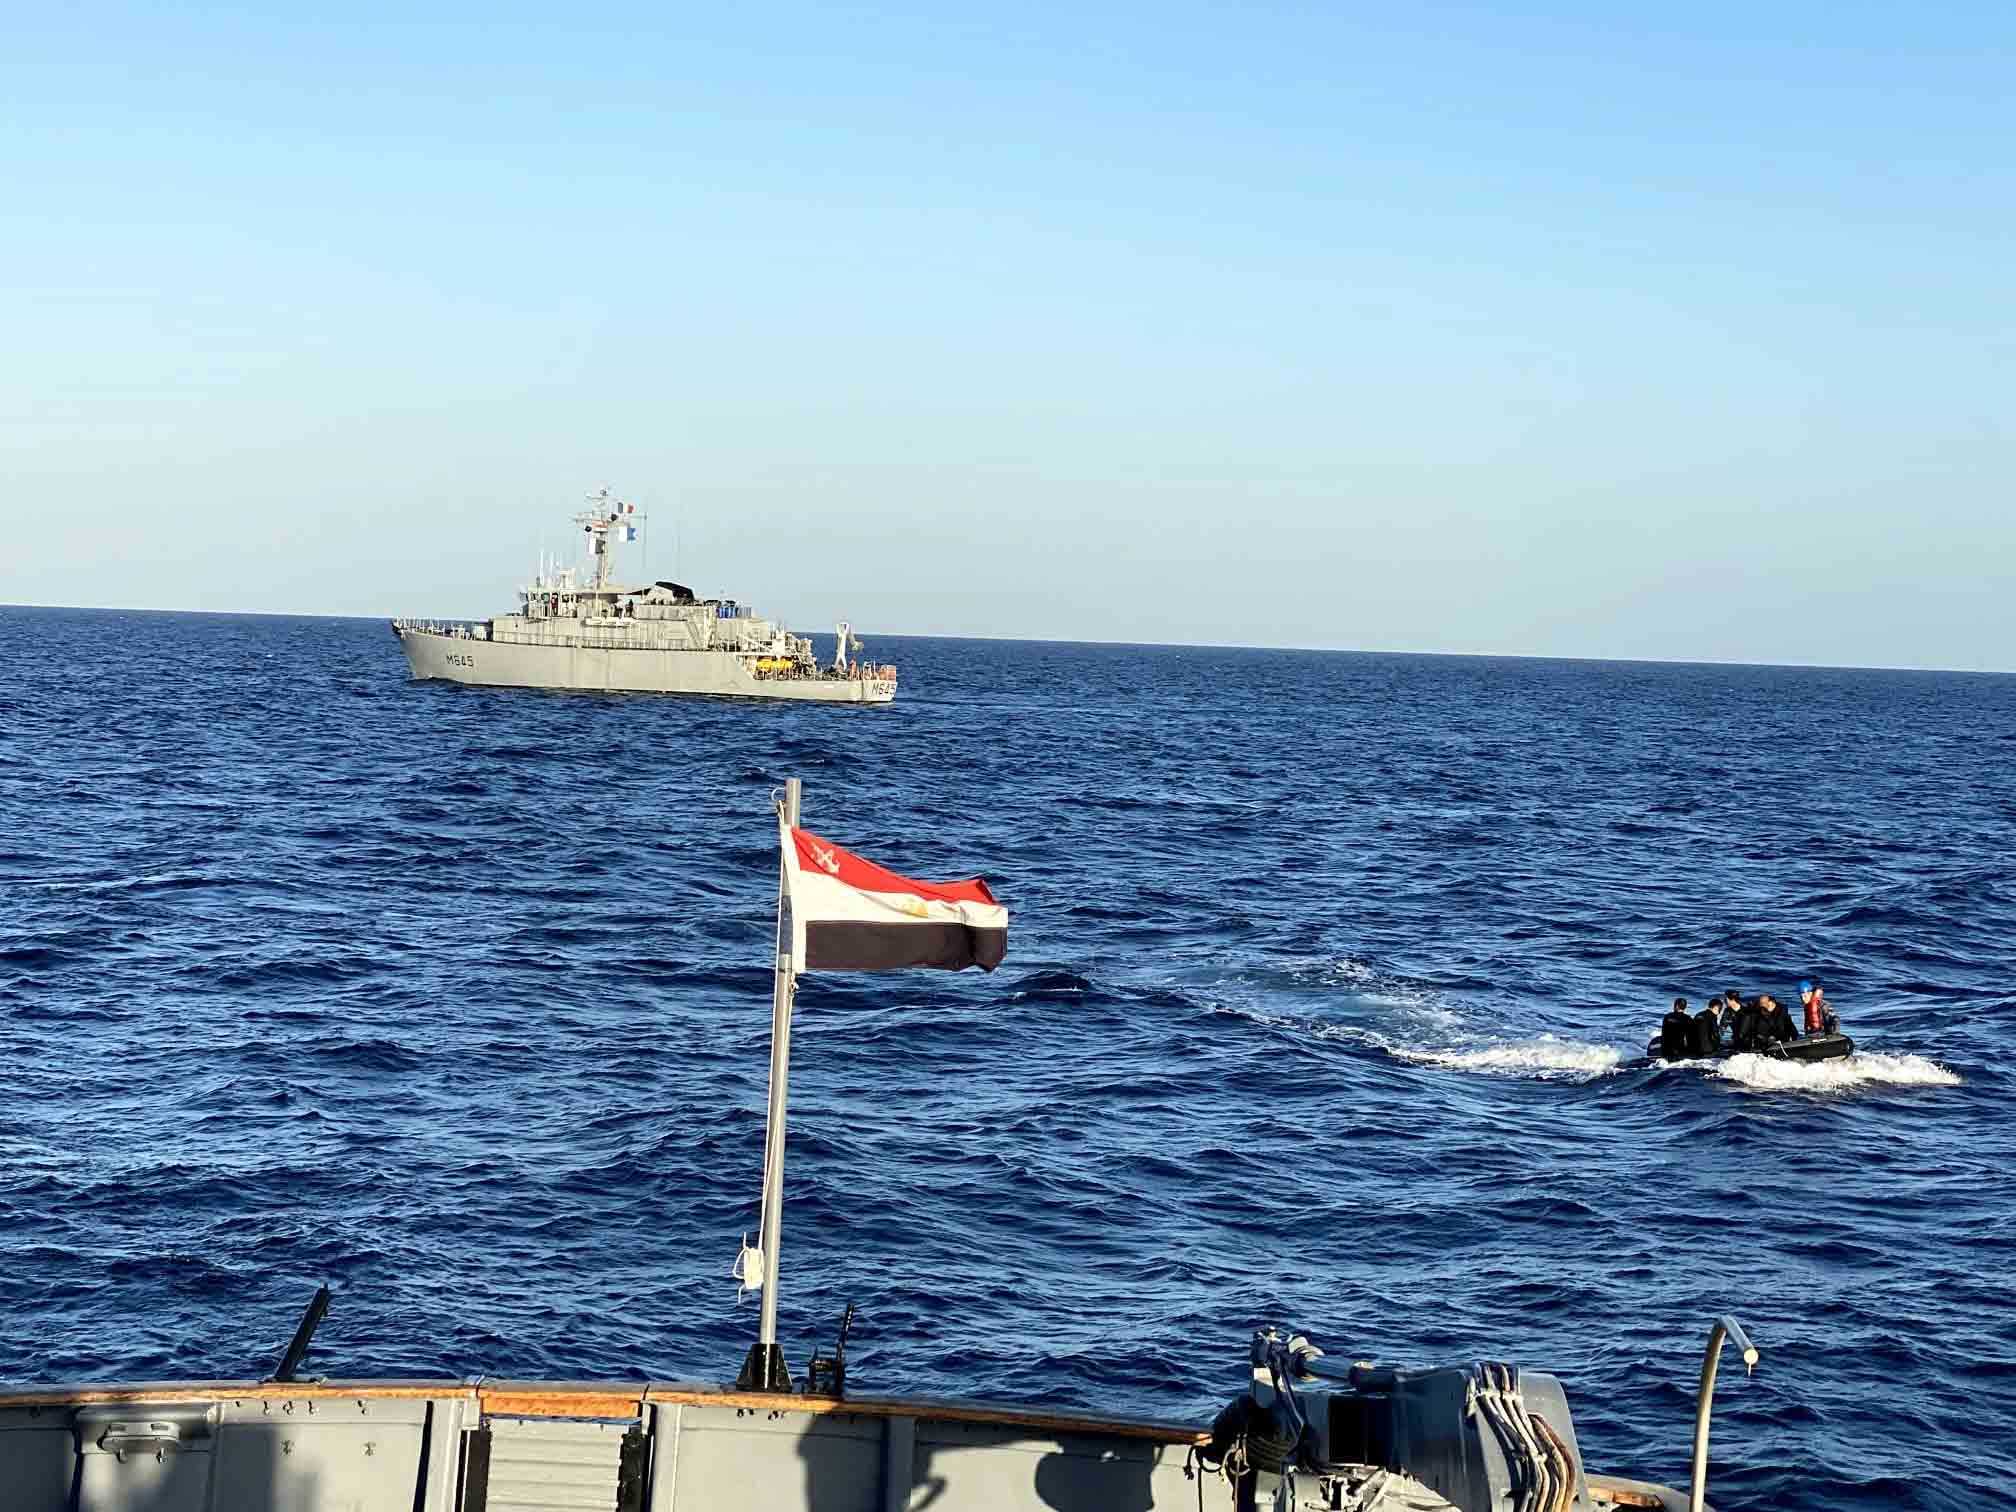  القوات البحرية المصرية والفرنسية تنفذان تدريبين بحريين في البحر الأحمر